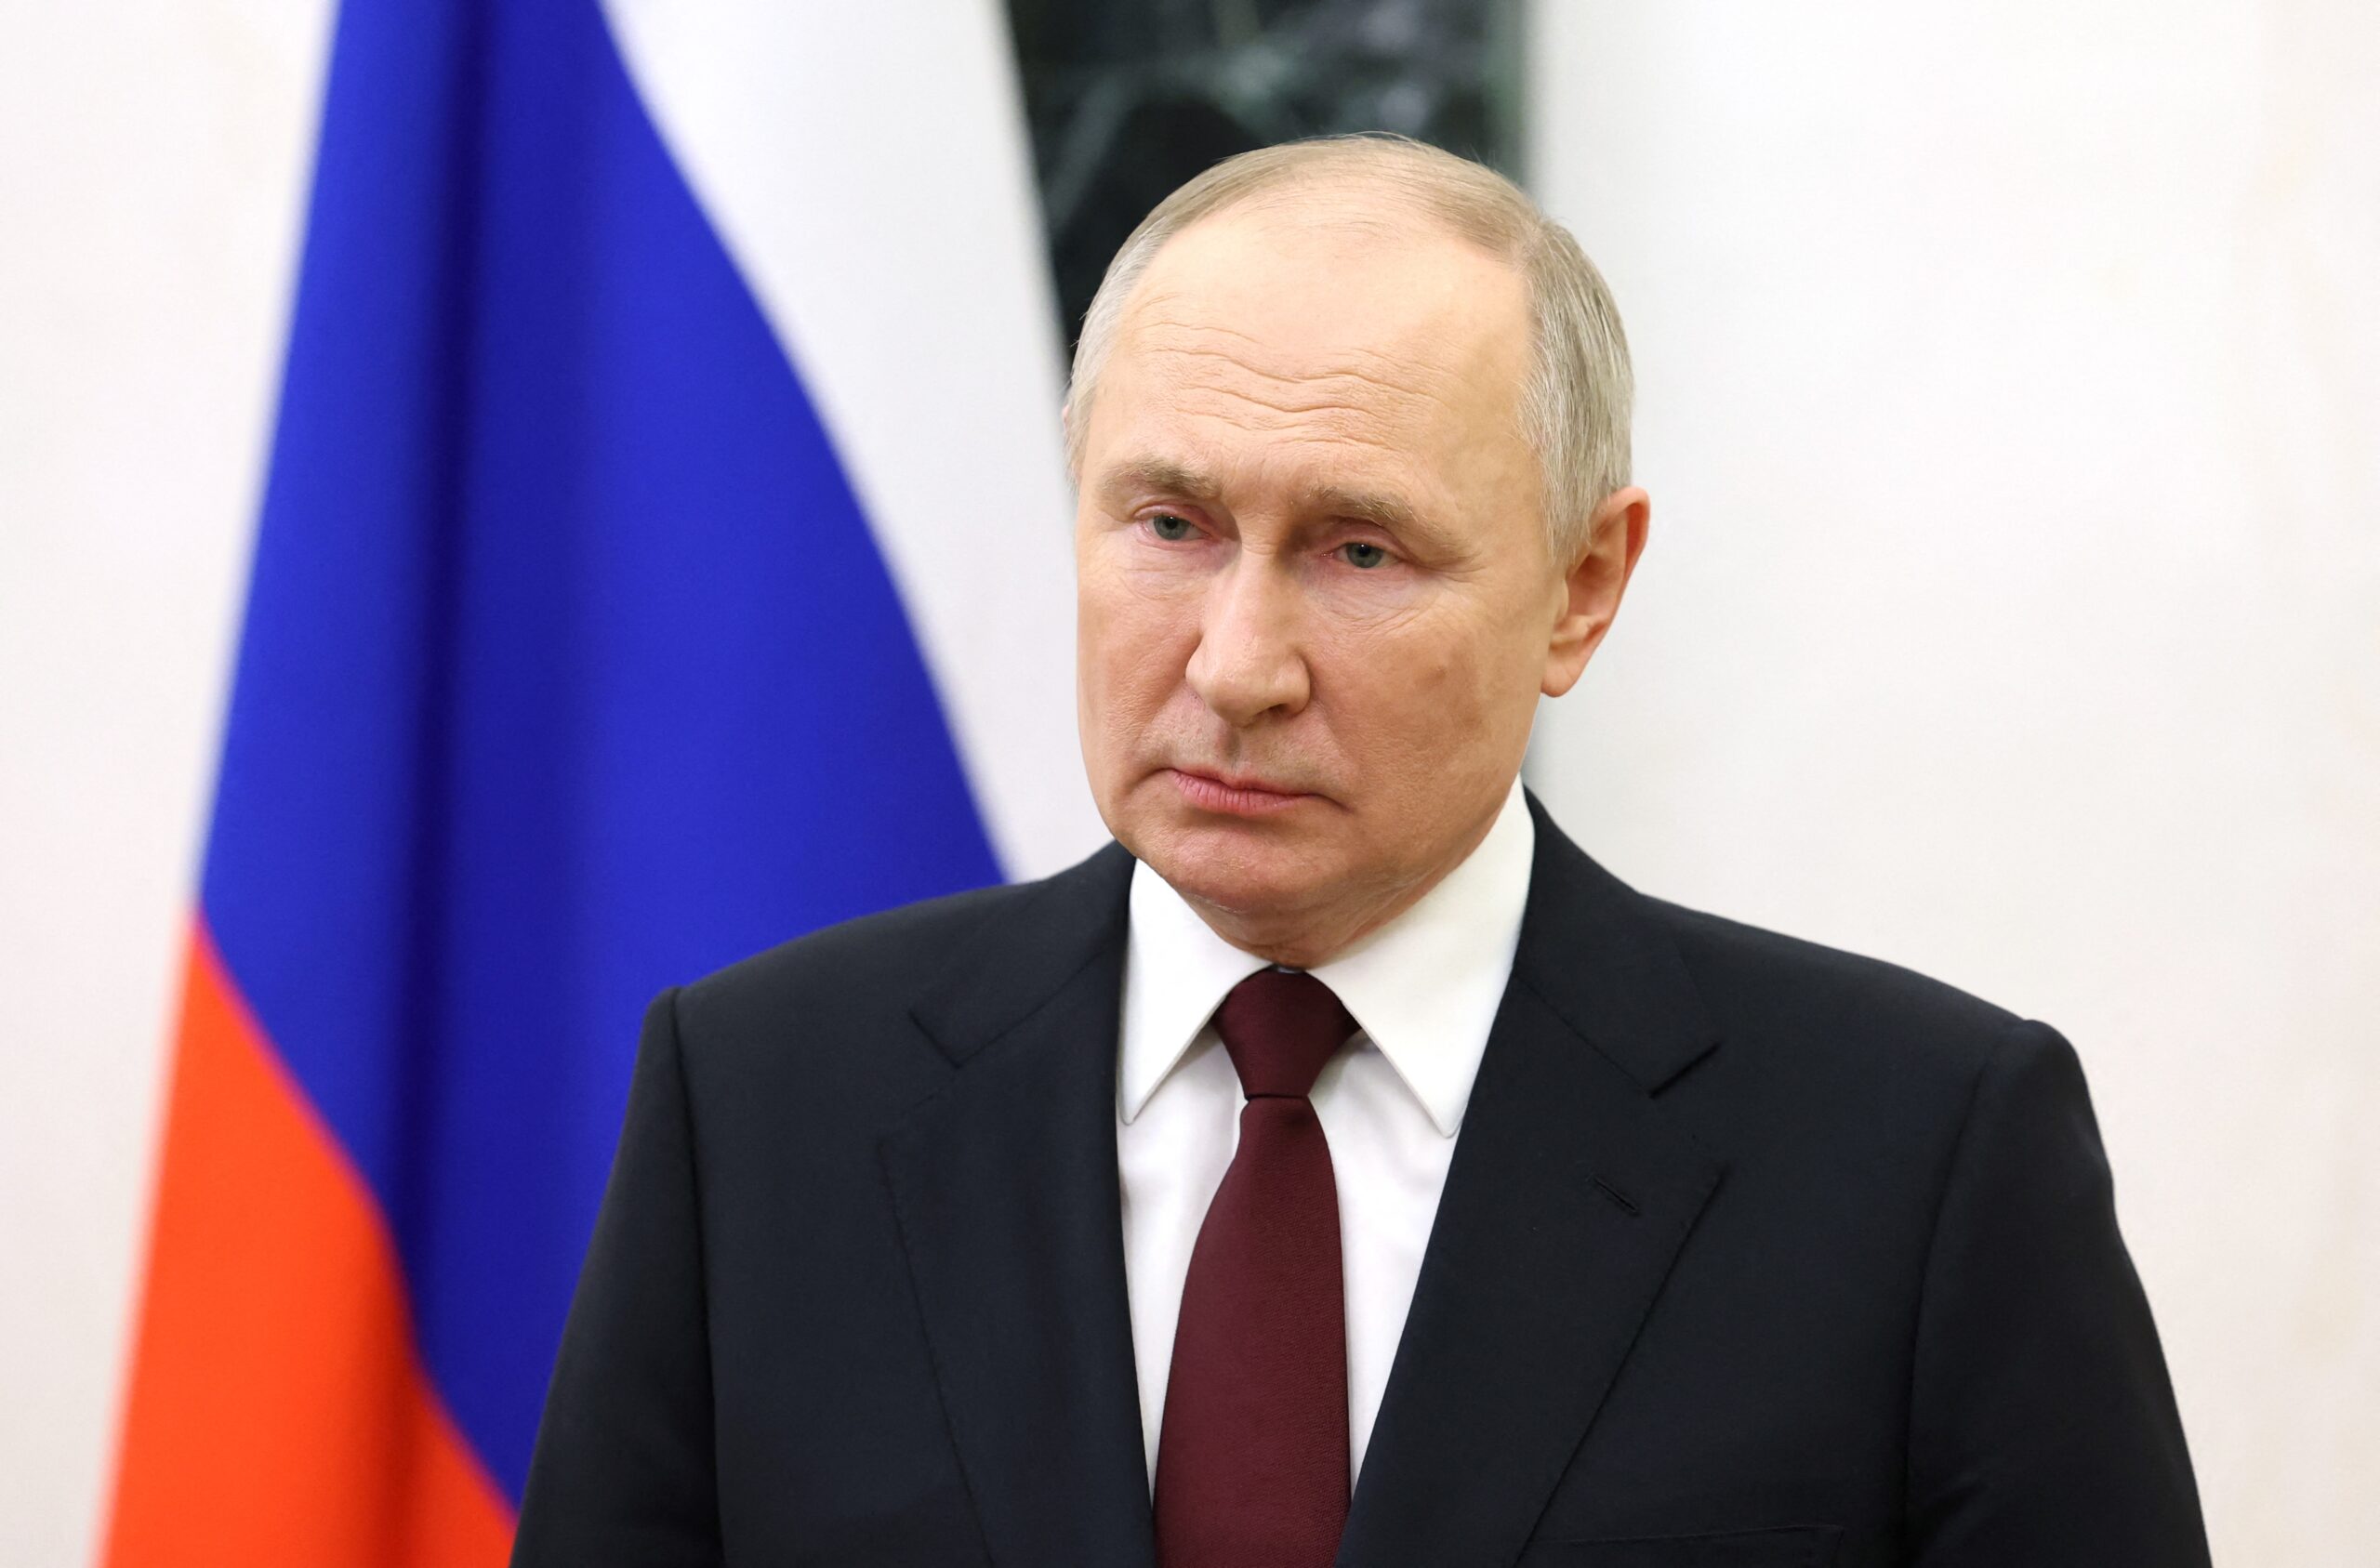 Invigorated by successes in Ukraine, Putin addresses Russians